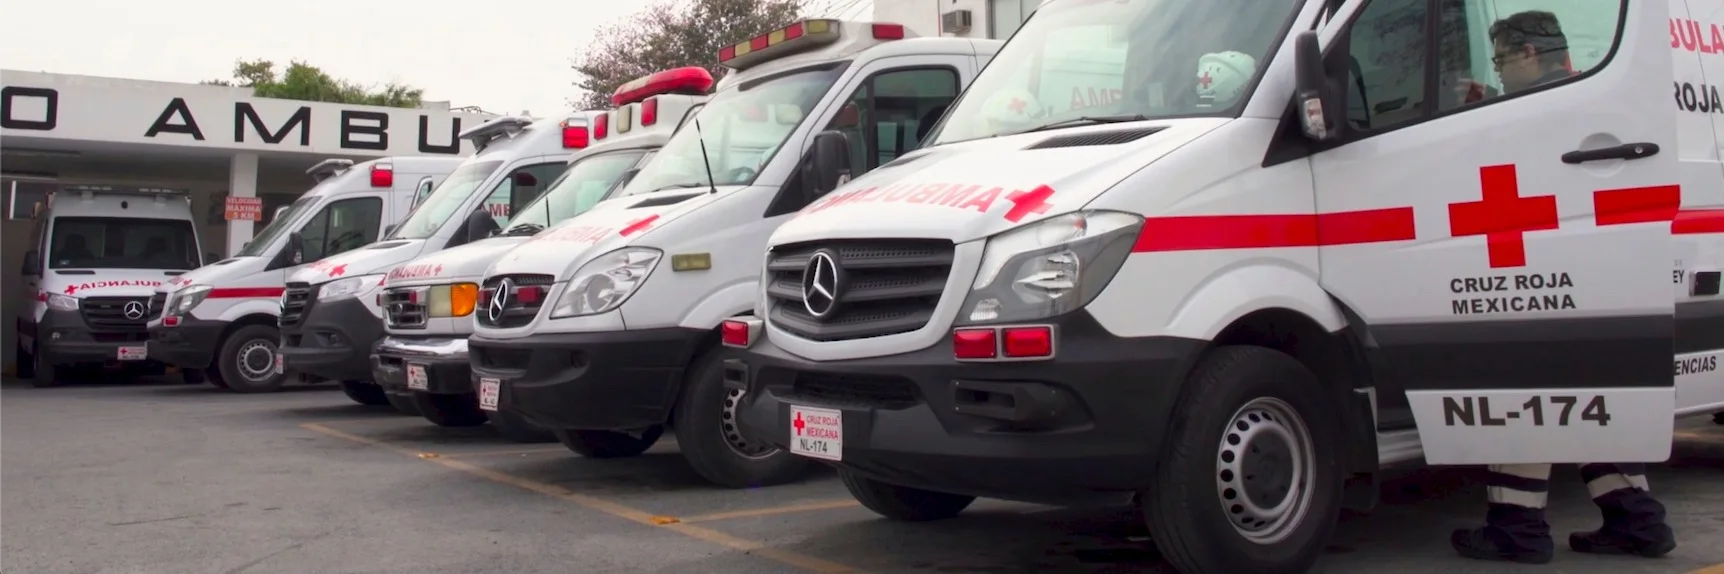 La Cruz Roja Mexicana, Delegación Nuevo León, mejora sus tiempos de respuesta ante emergencias y aumenta la seguridad de los operadores y pacientes con la plataforma unificada de Samsara